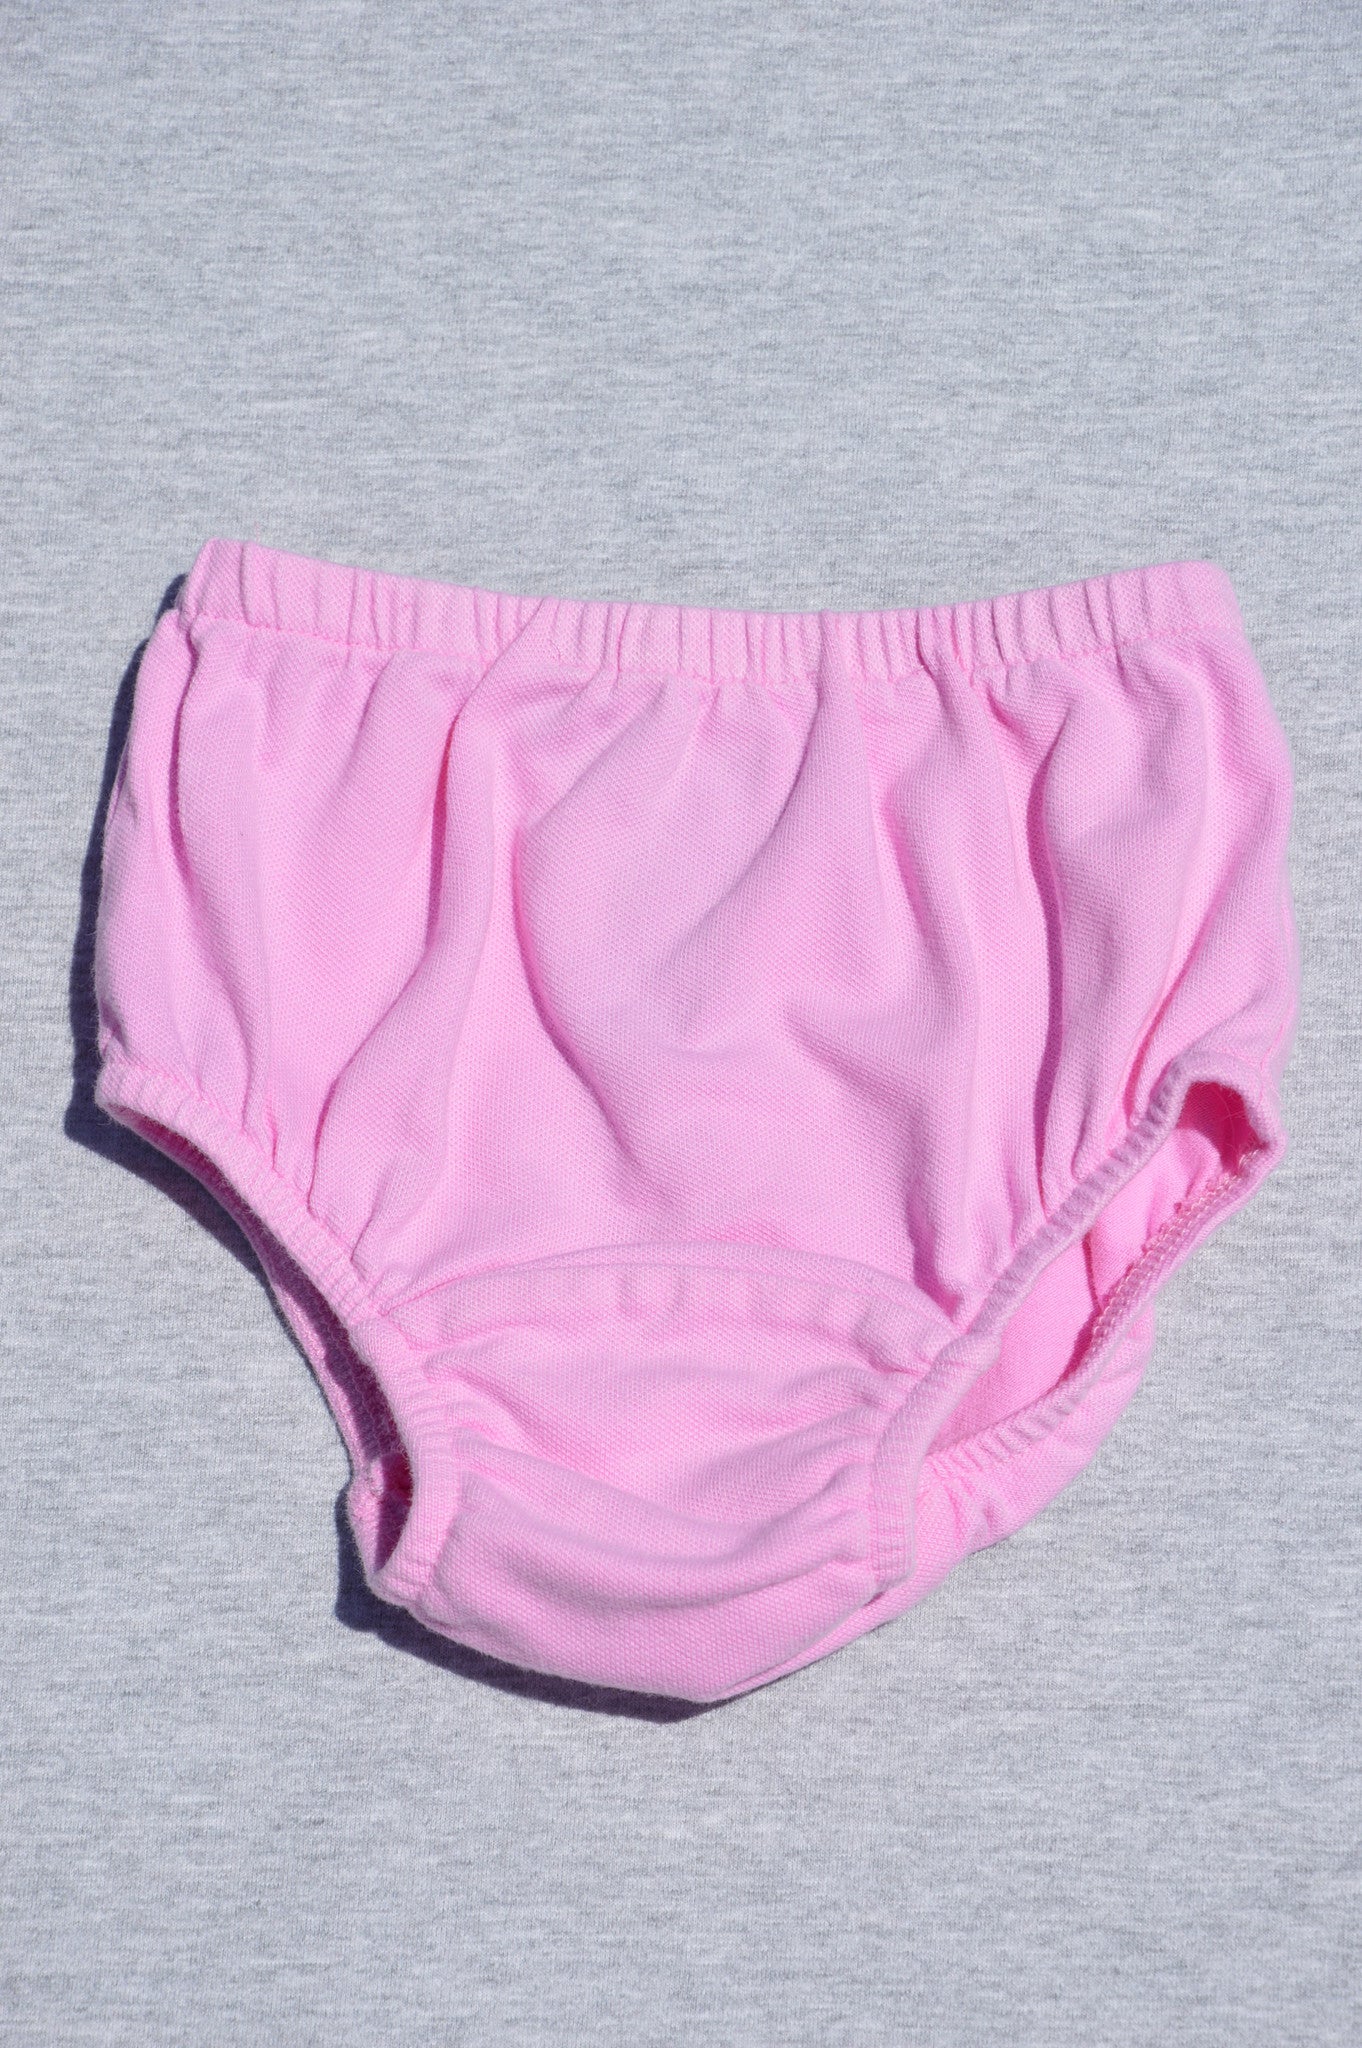 Ralph Lauren pink overnaps, size 9m - Charlie & Flo's